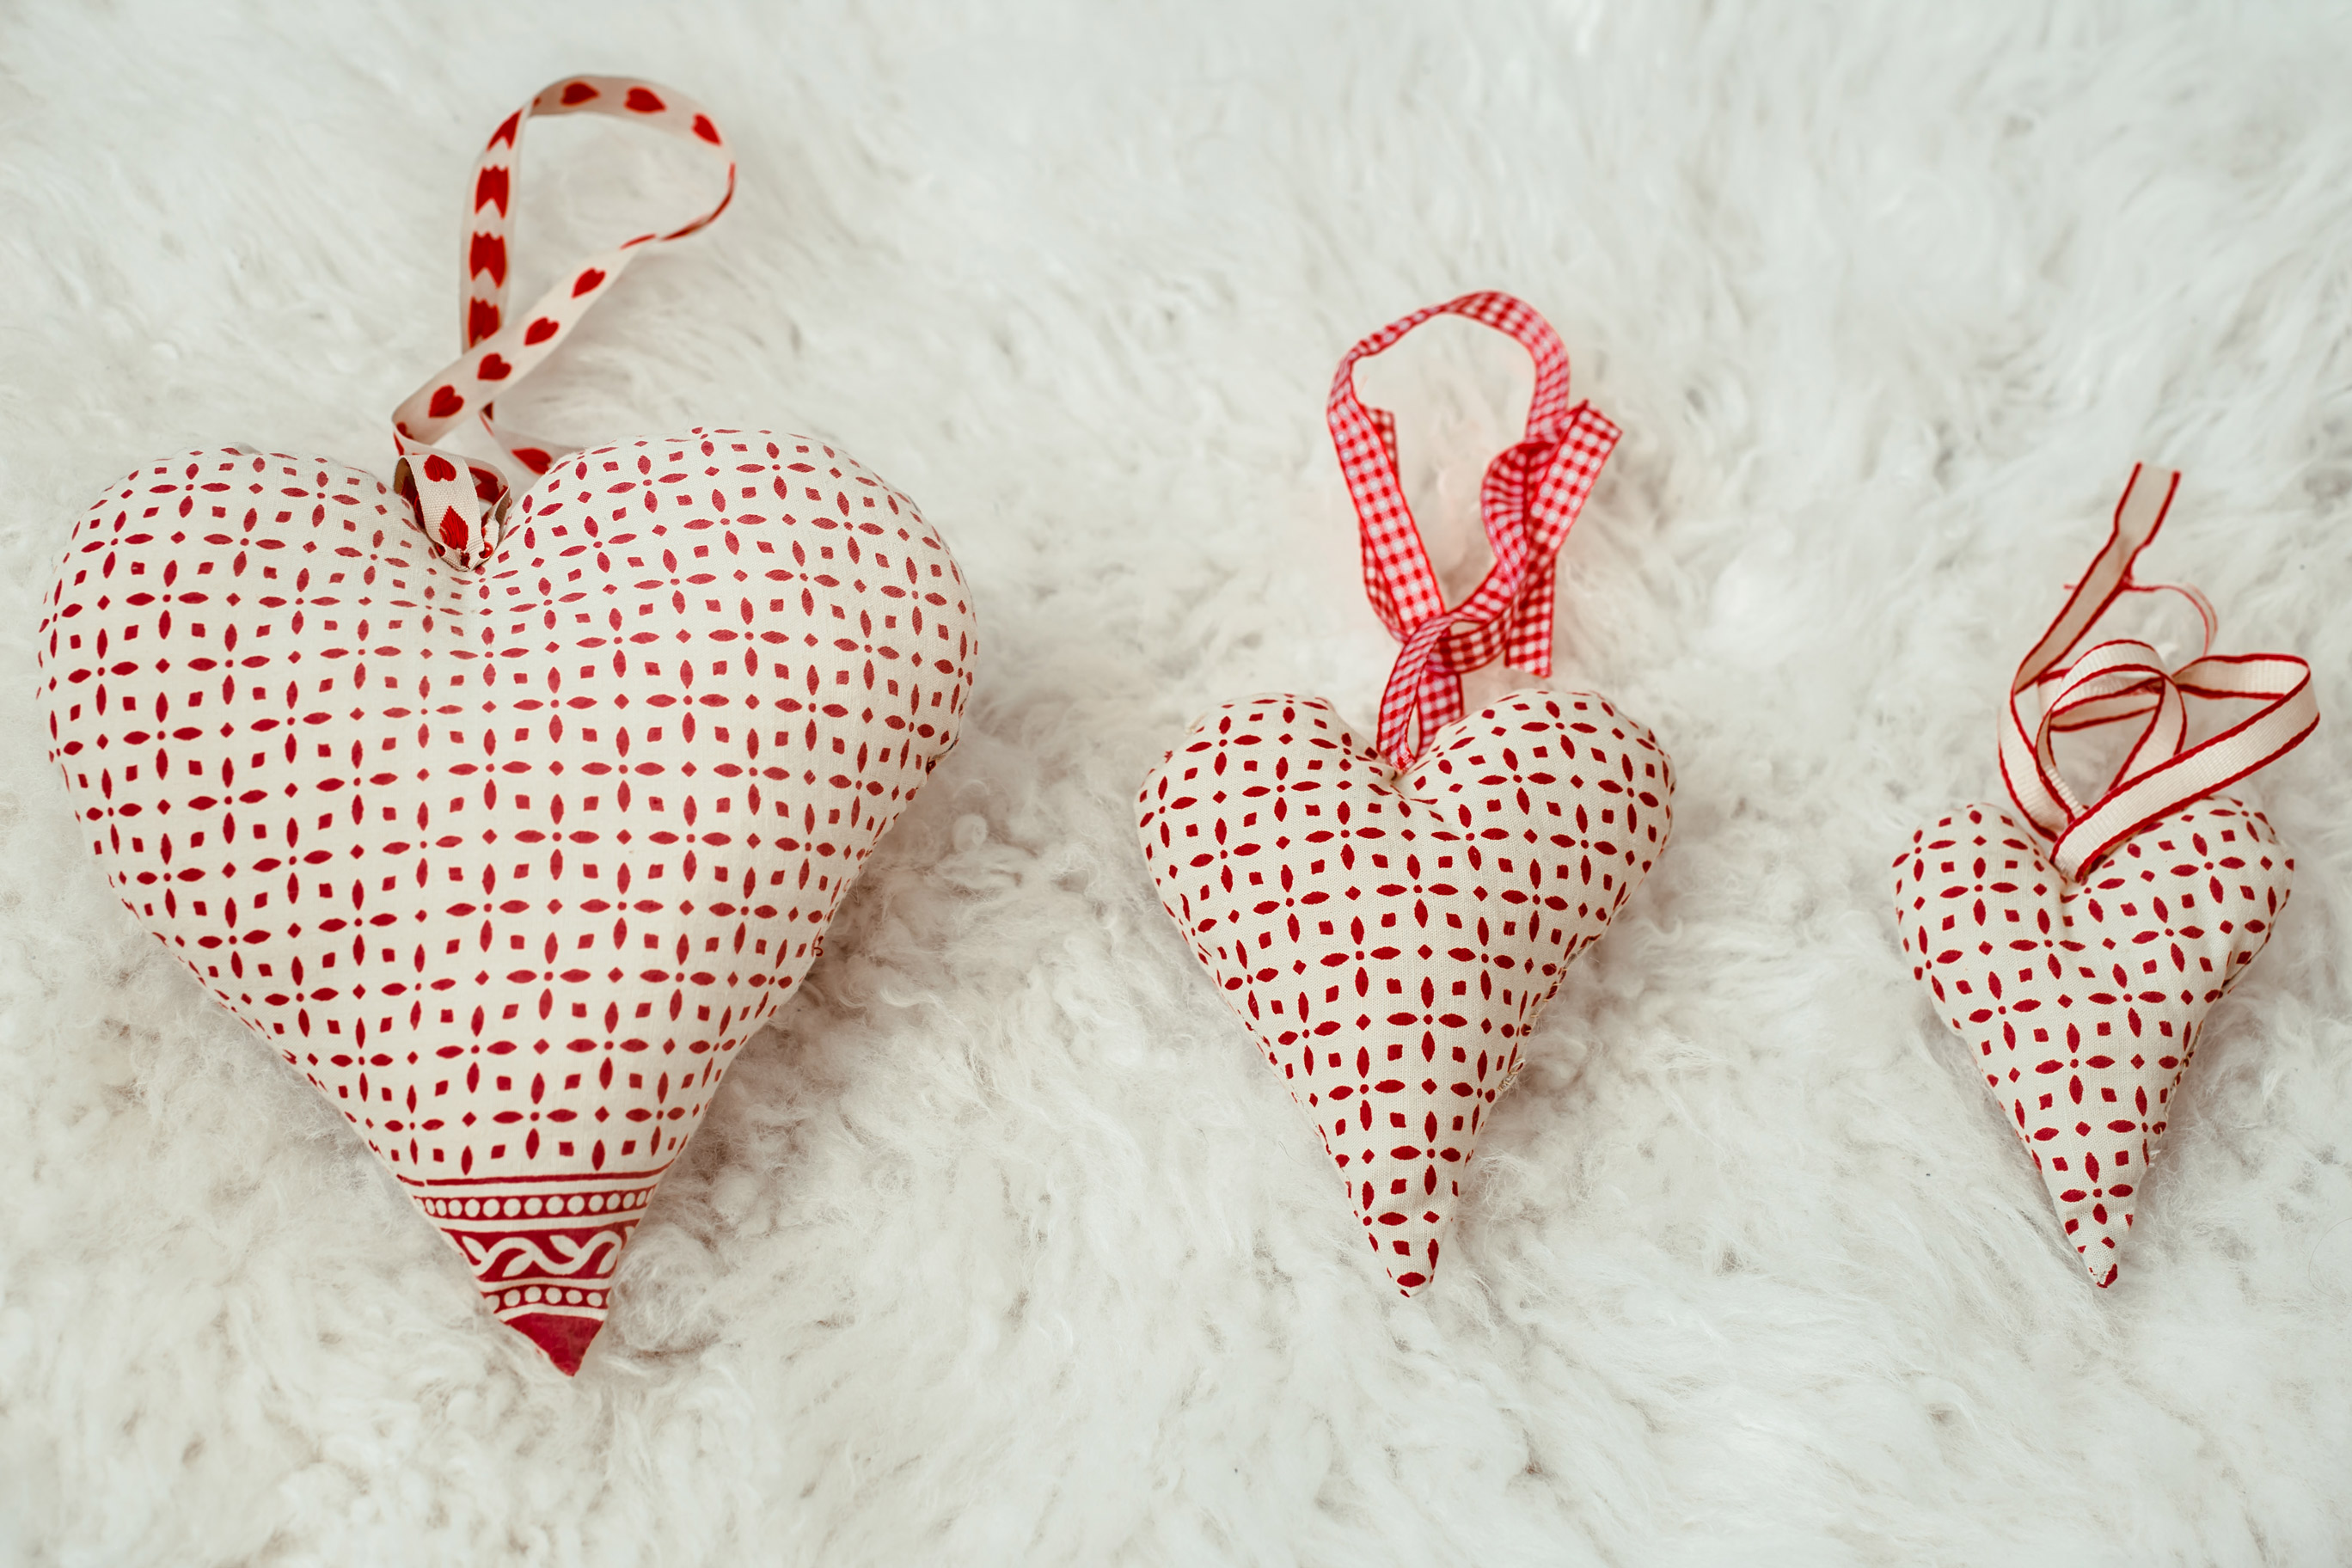 Как красиво упаковать подарок на день влюбленных: 7 красивых идей